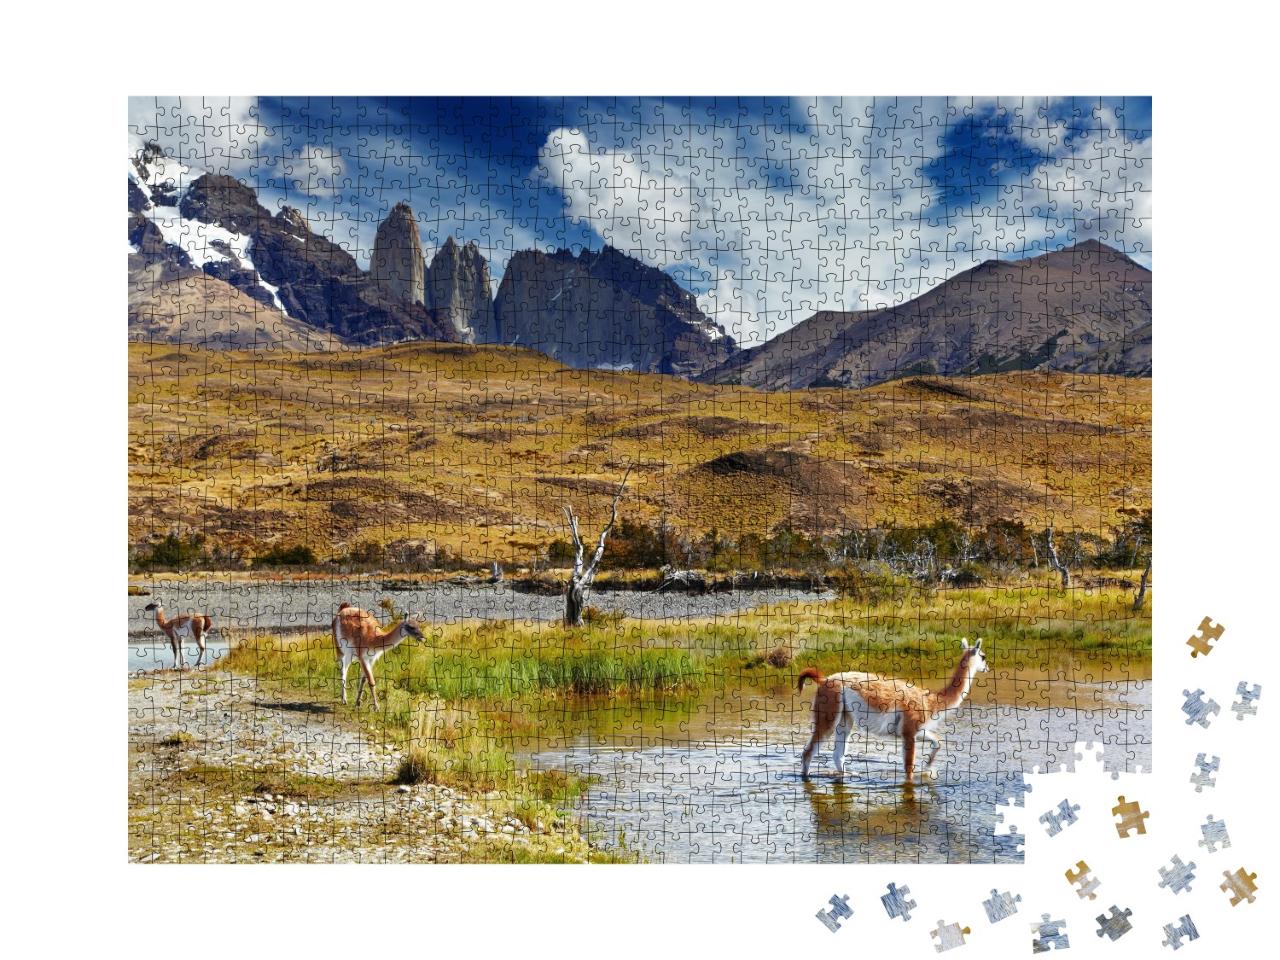 Puzzle de 1000 pièces « Guanako dans le parc national Torres del Paine, Patagonien, Chili »